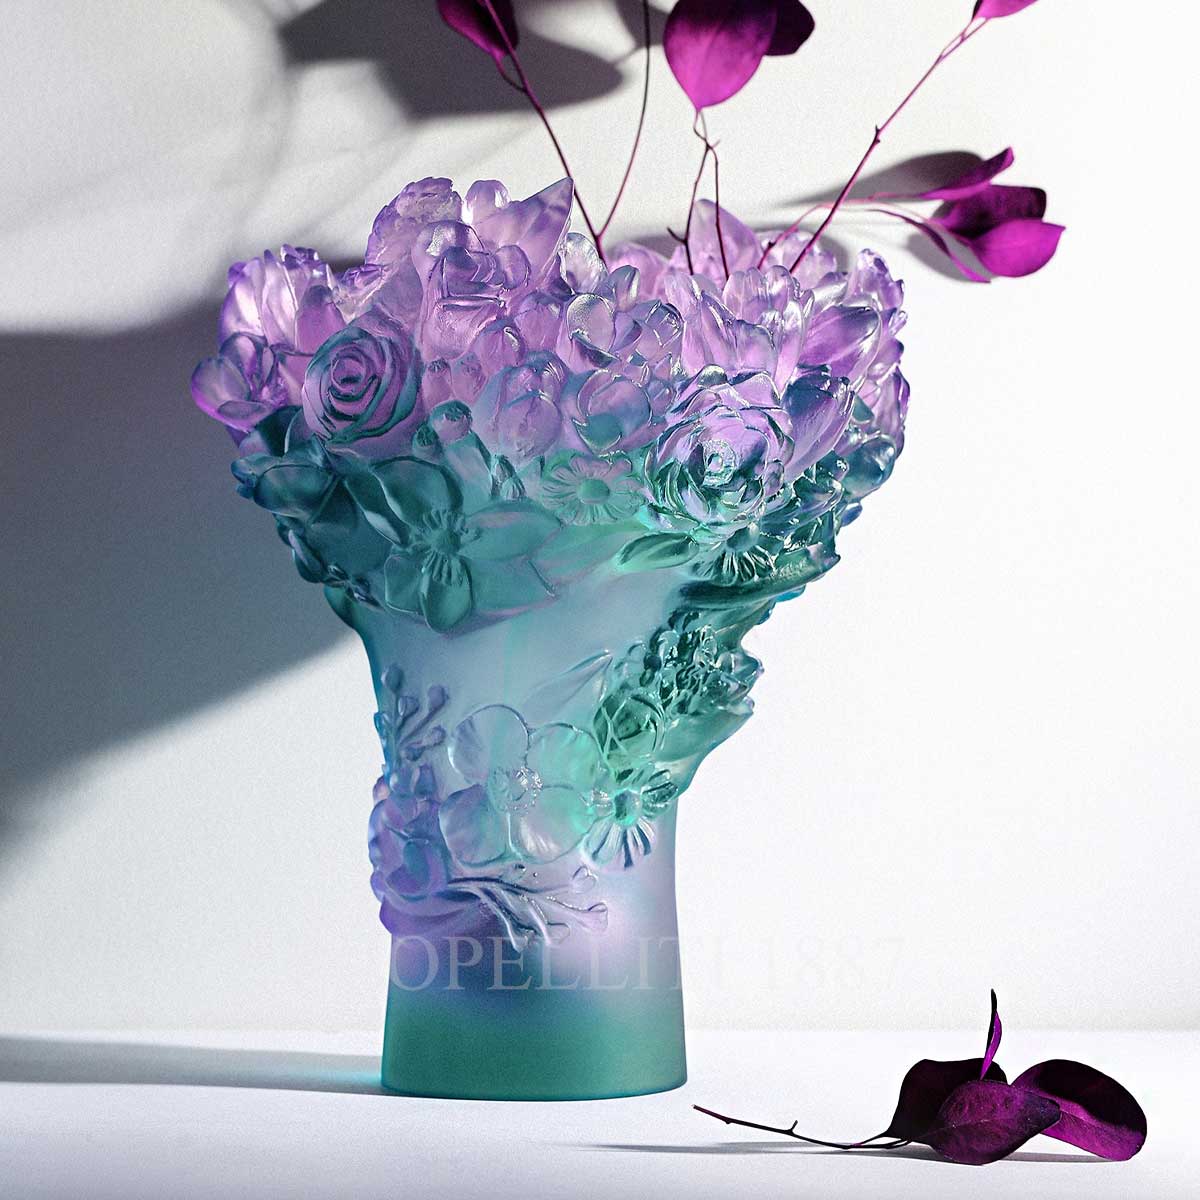 New vase